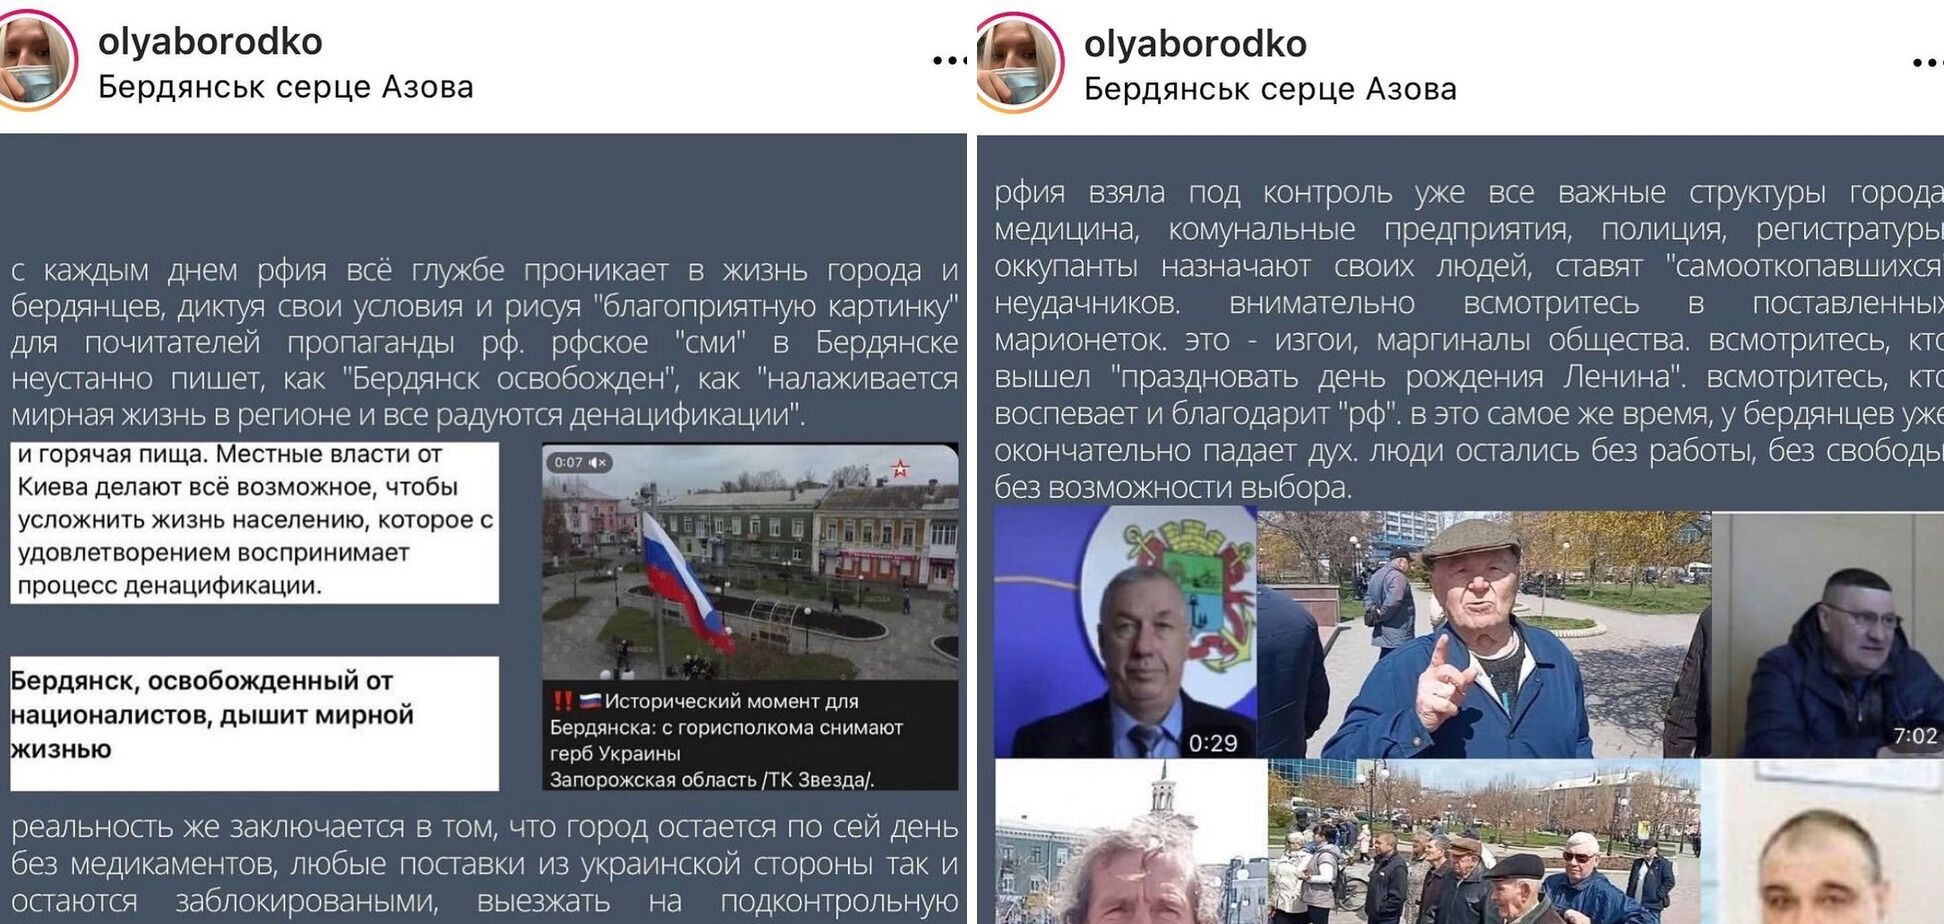 Скриншоты пропагандистских материалов и рассказ украинцев.